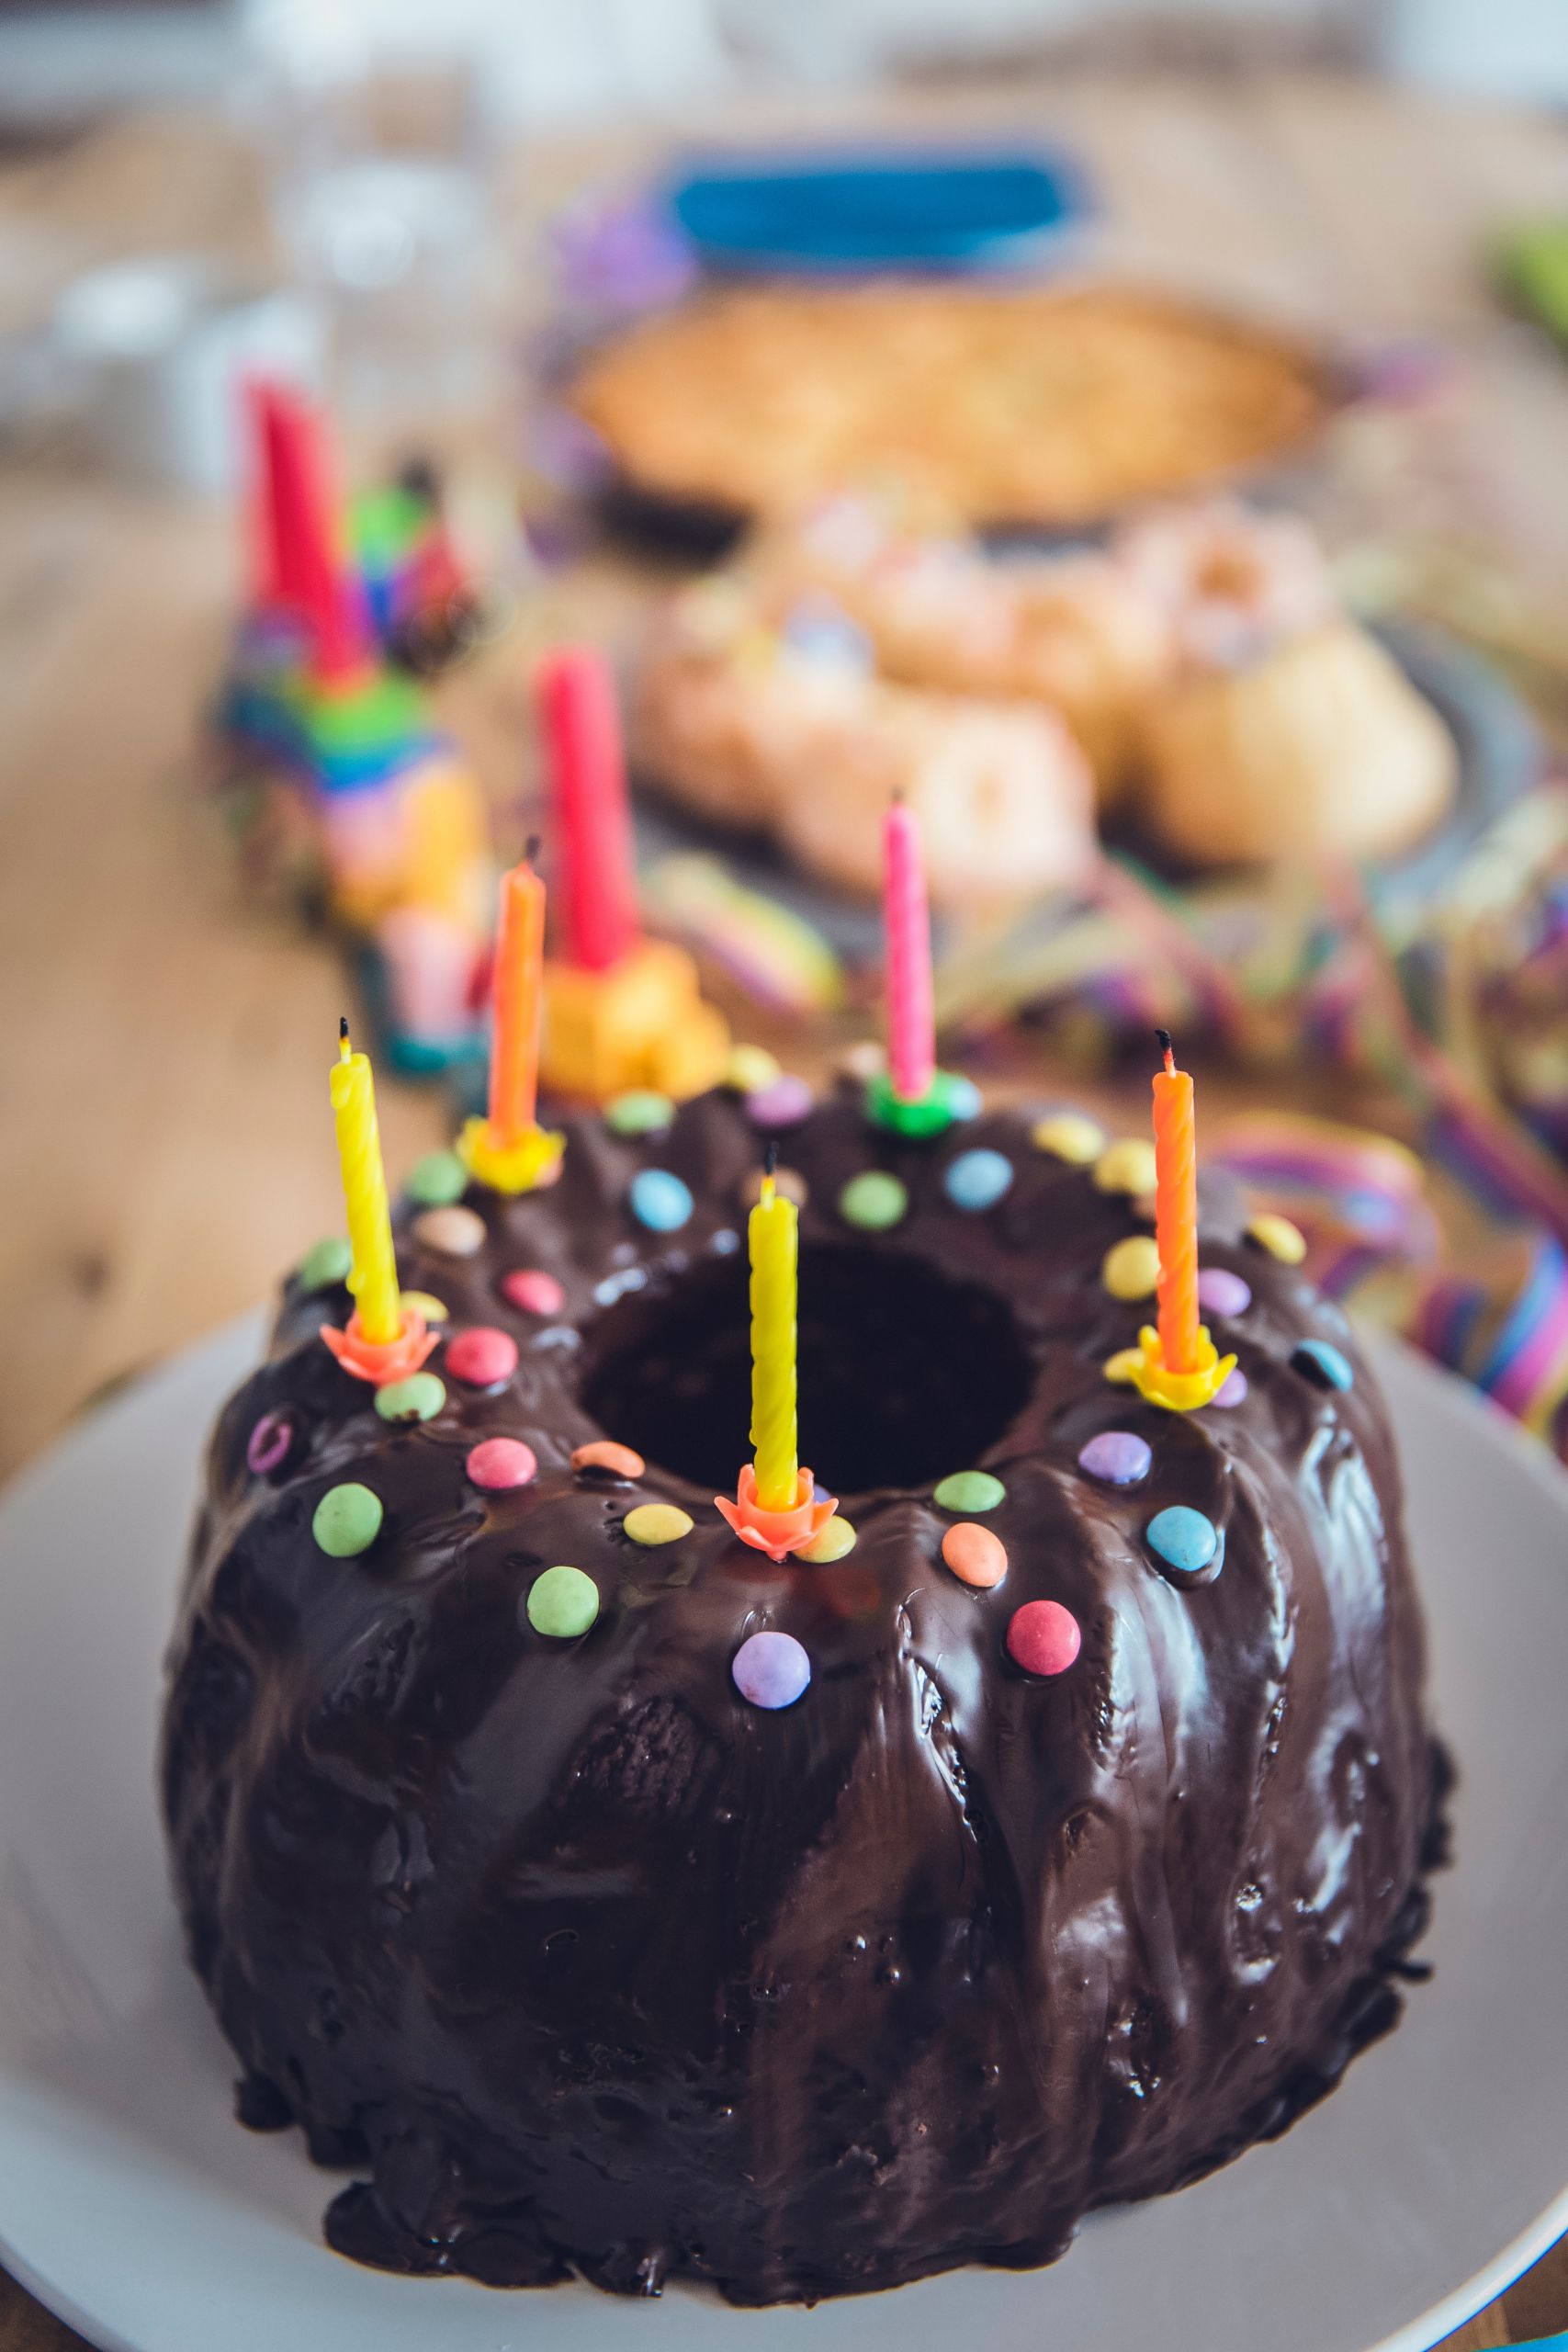 Happy Birthday Cake Picture
 500 Amazing Birthday Cake s · Pexels · Free Stock s